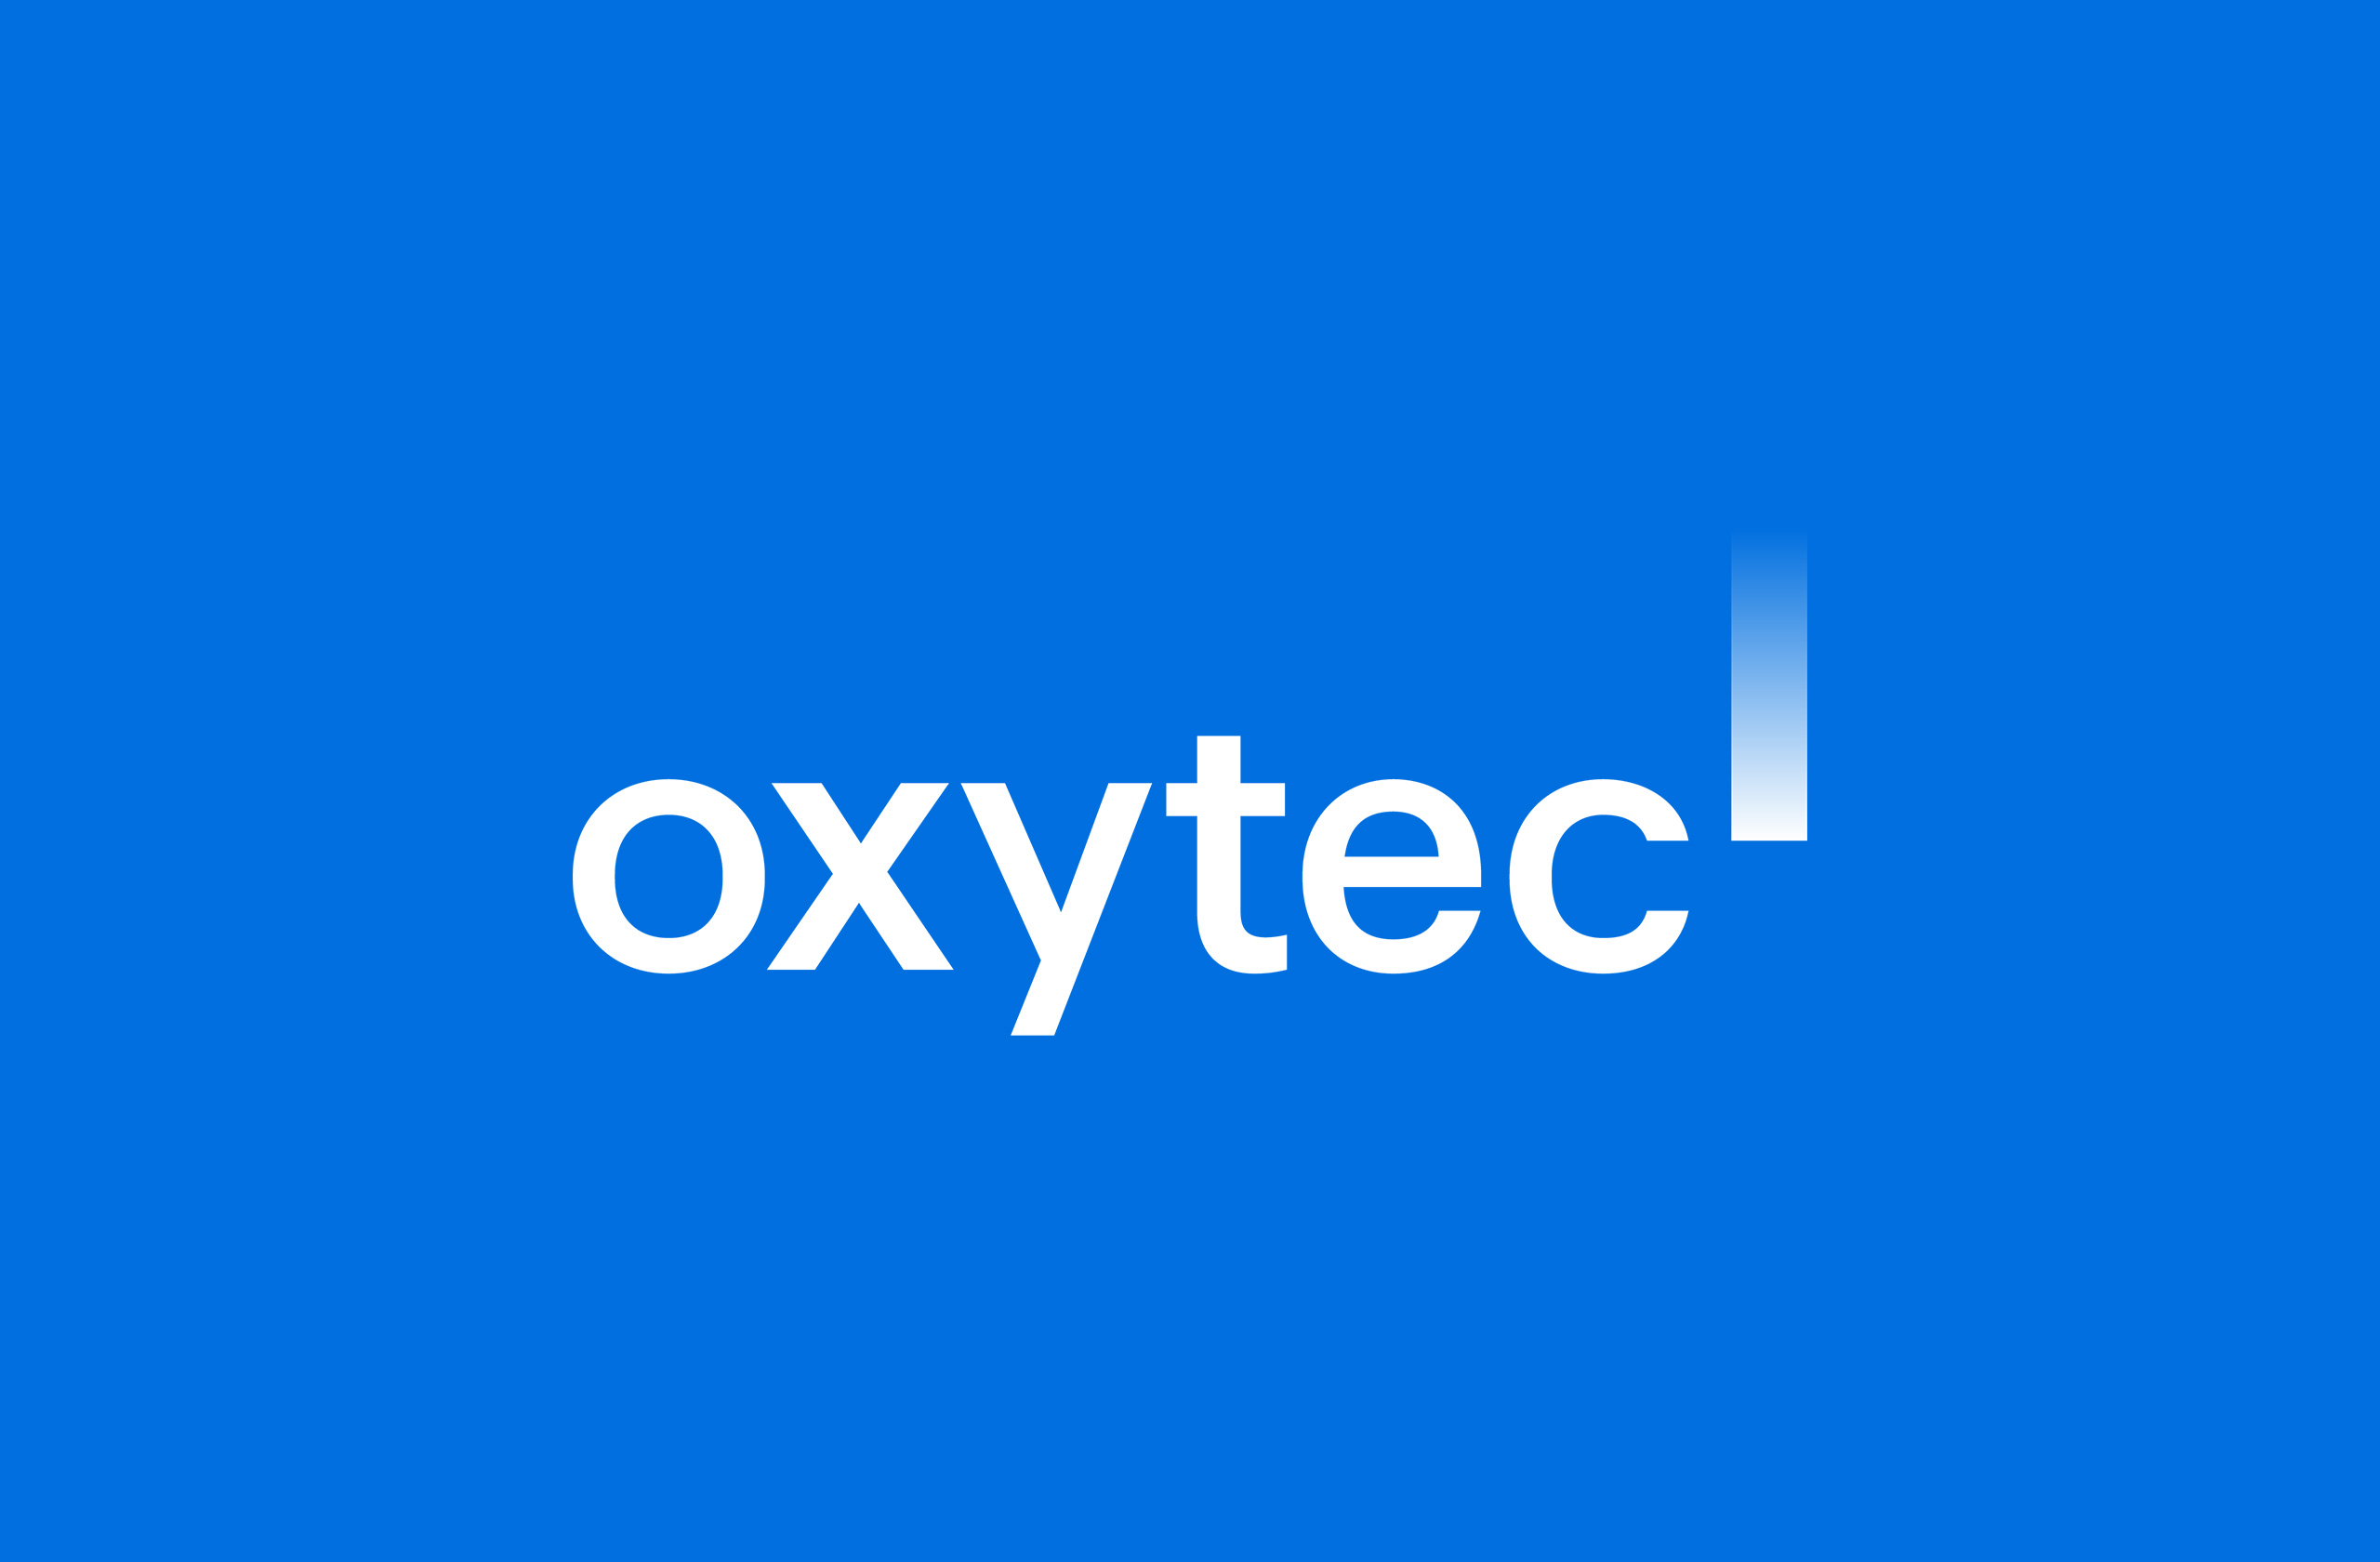 oxytec_06